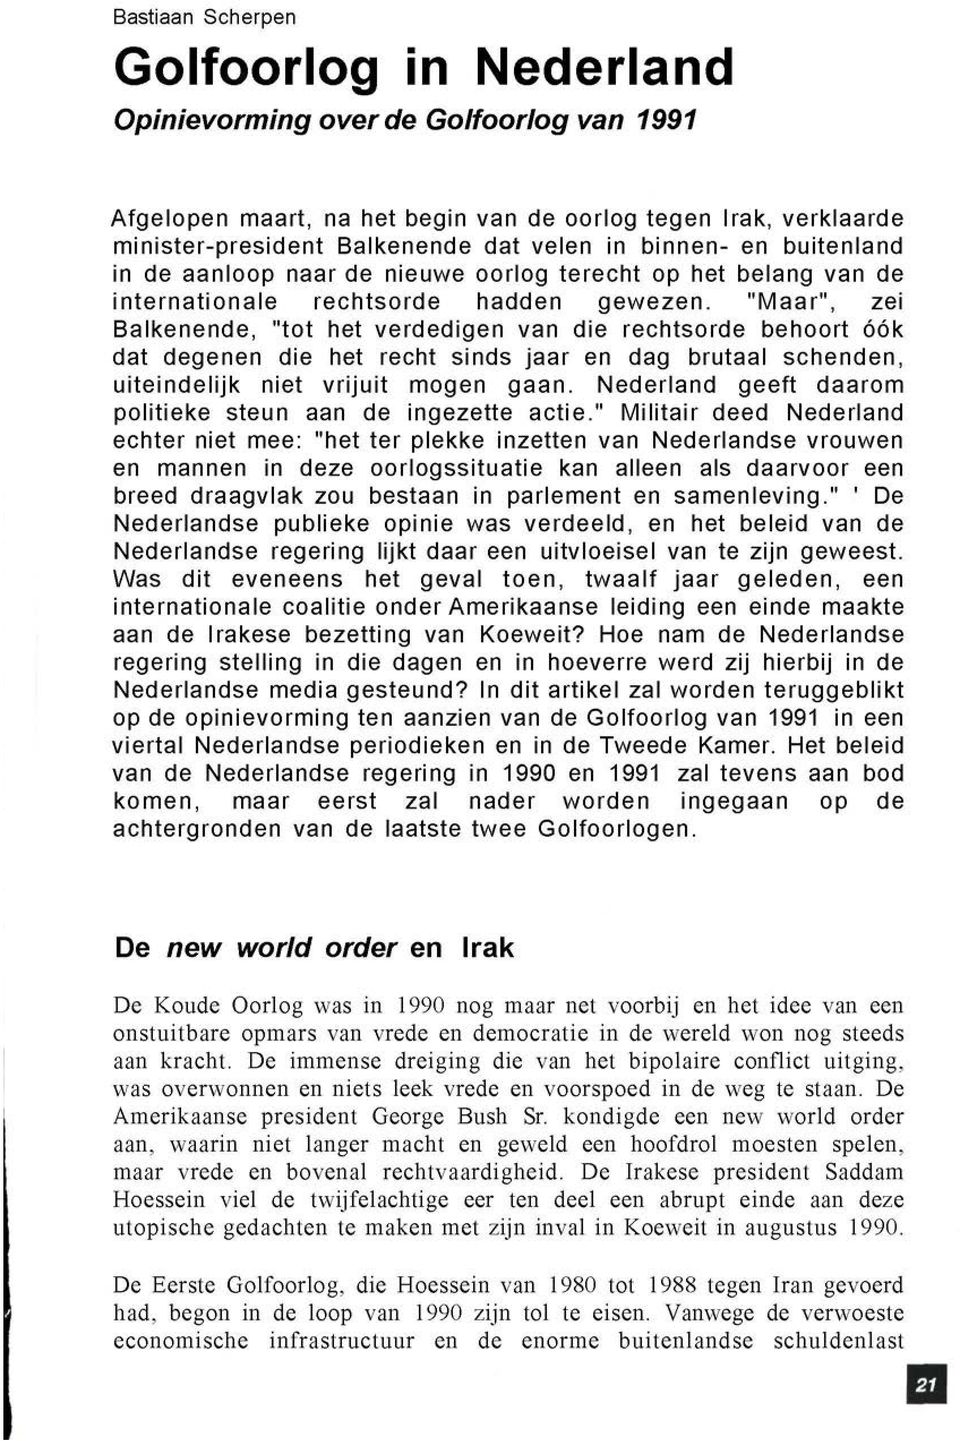 "Maar", zei Balkenende, "tot het verdedigen van die rechtsorde behoort óók dat degenen die het recht sinds jaar en dag brutaal schenden, uiteindelijk niet vrijuit mogen gaan.